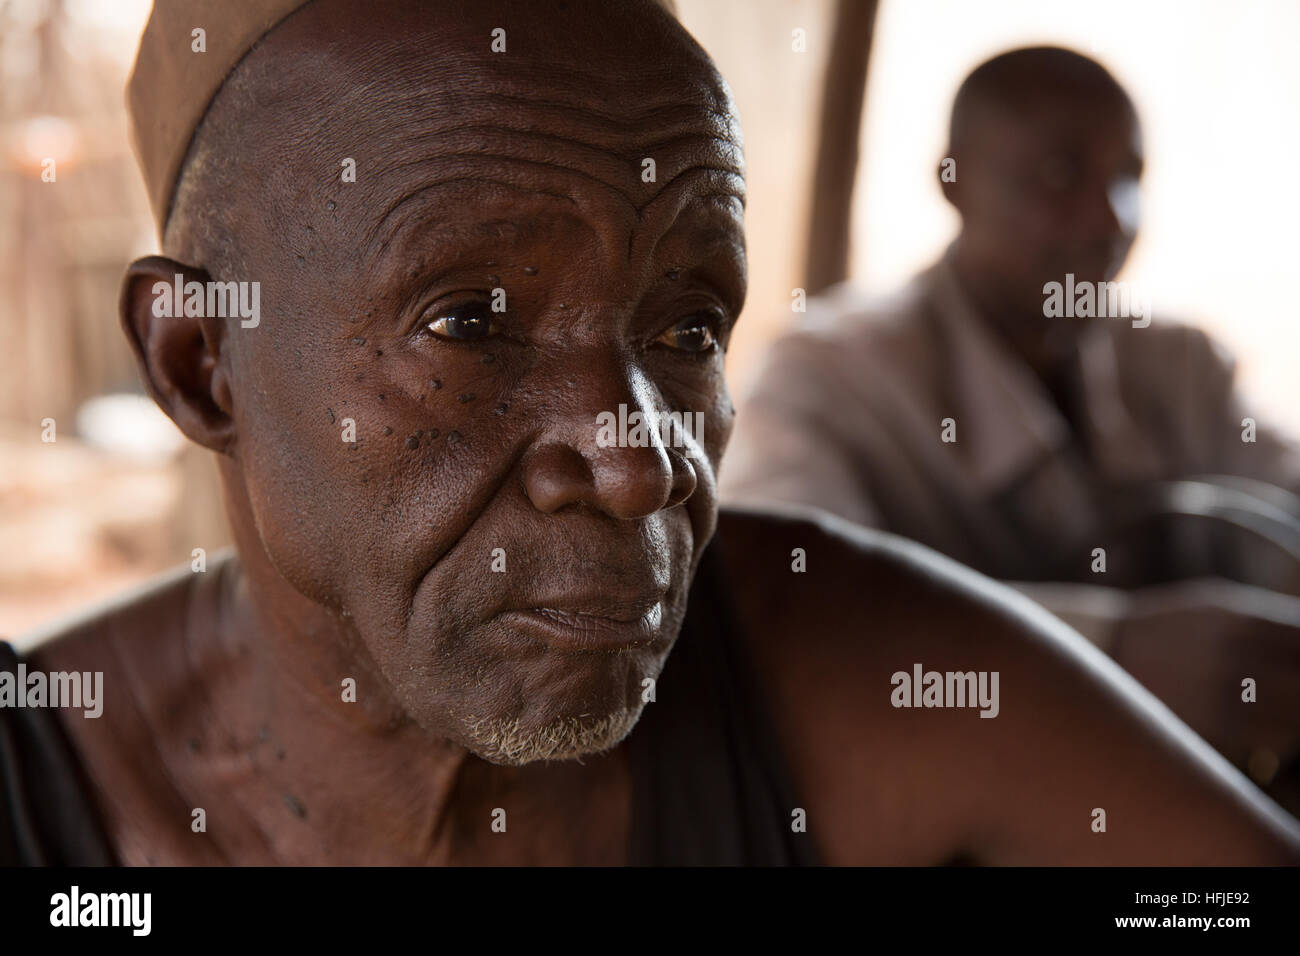 Gbderedou Baranama, Guinea, 2° maggio 2015; Fabbro Namory Camara, 80, 2 mogli, 12 bambini, fuori di casa sua. Foto Stock